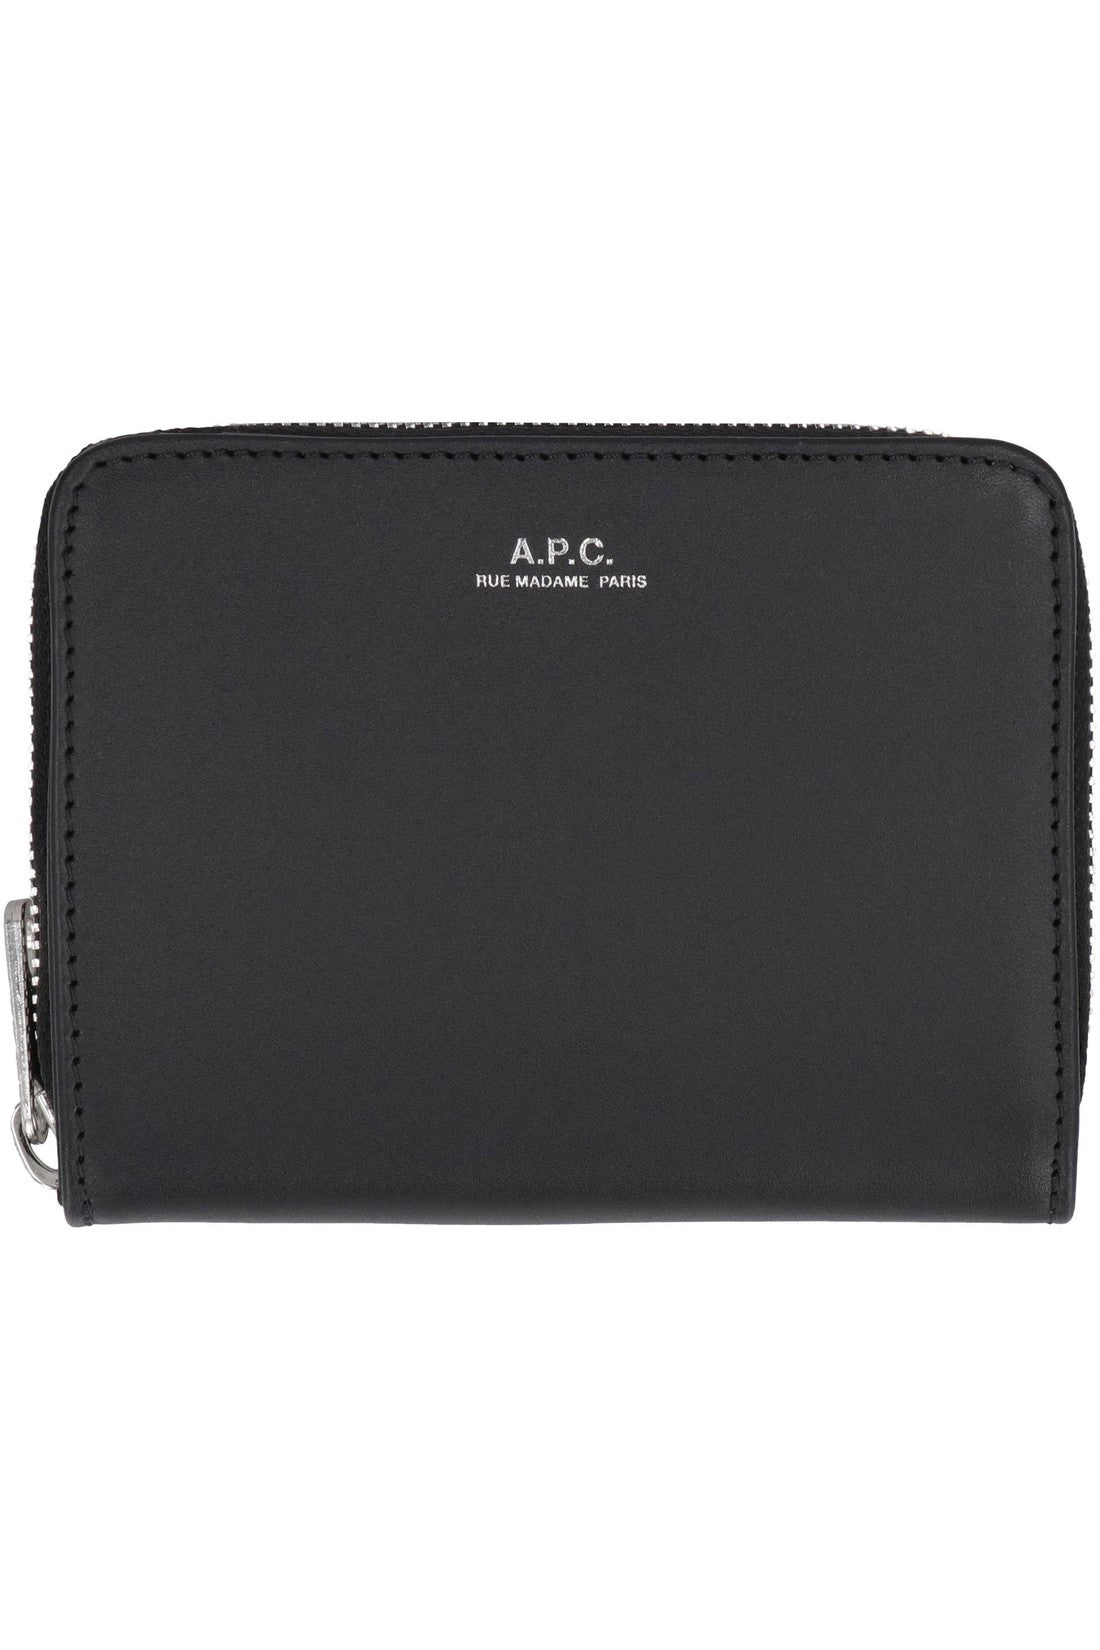 A.P.C.-OUTLET-SALE-Emmanuel leather wallet-ARCHIVIST